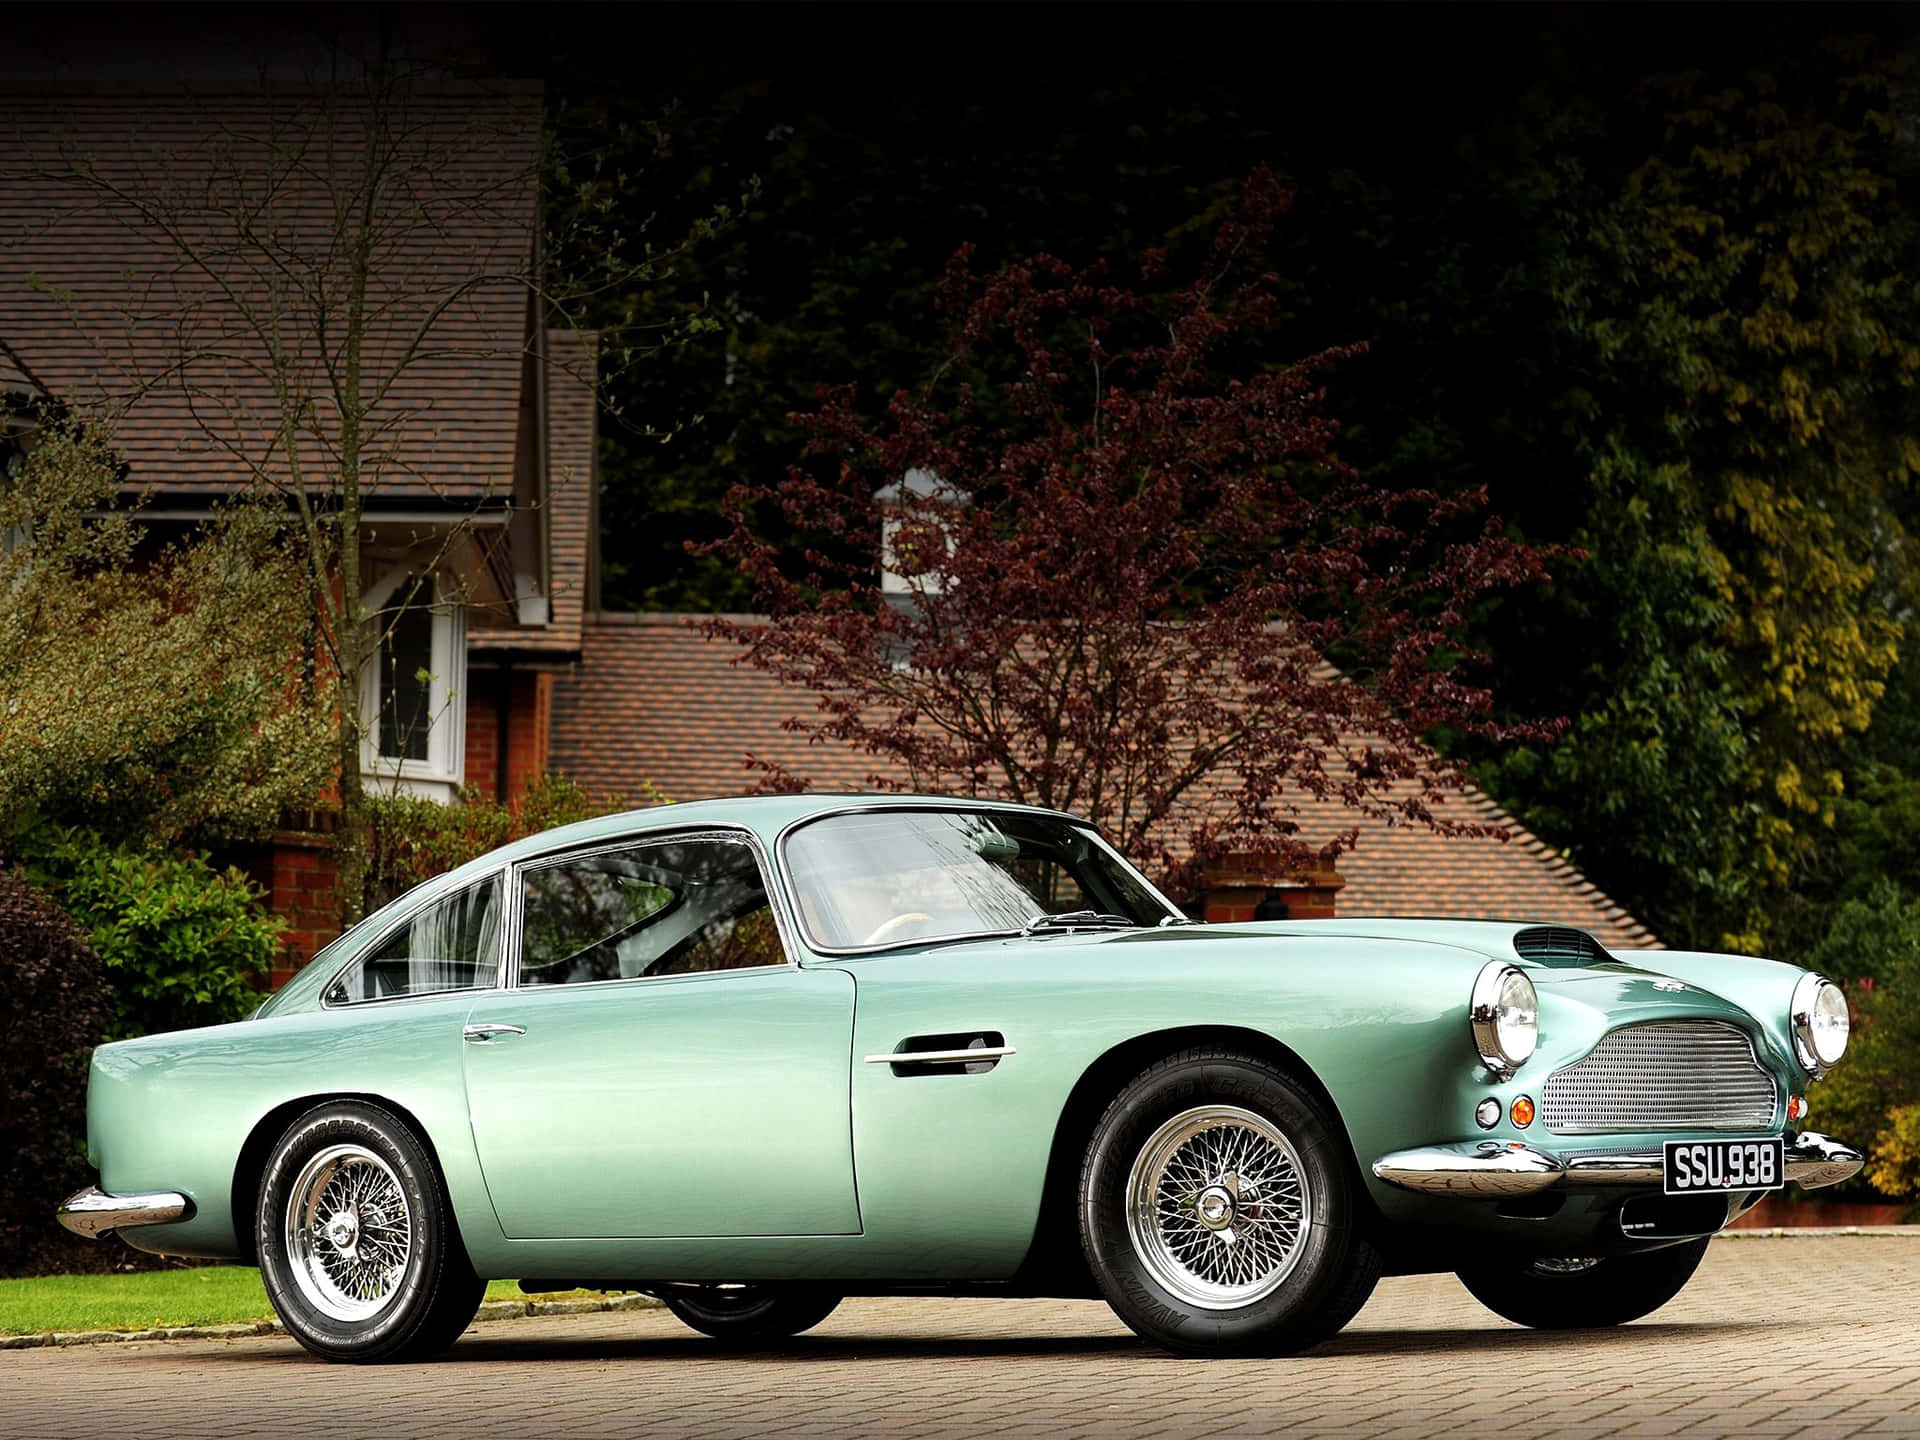 Eingrüner Aston Martin Db5 Geparkt Vor Einem Haus. Wallpaper